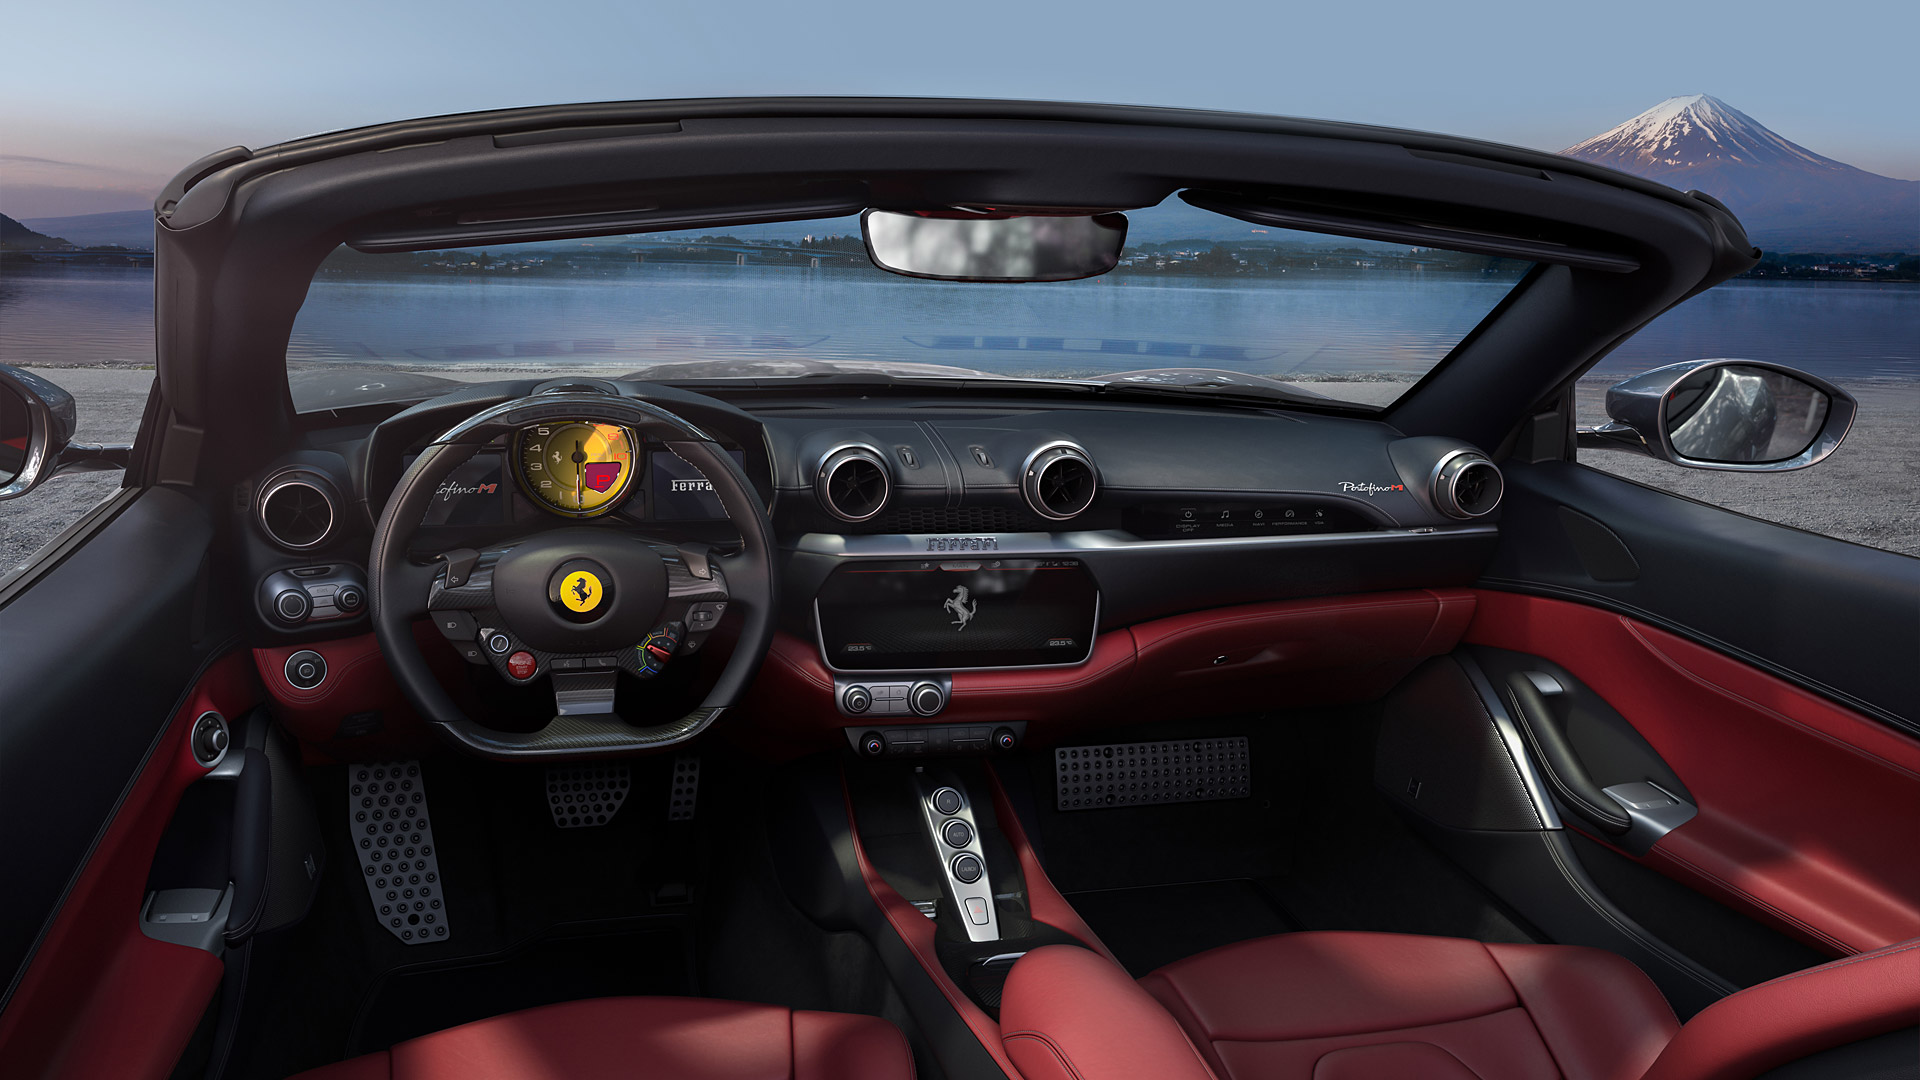  2021 Ferrari Portofino M Wallpaper.